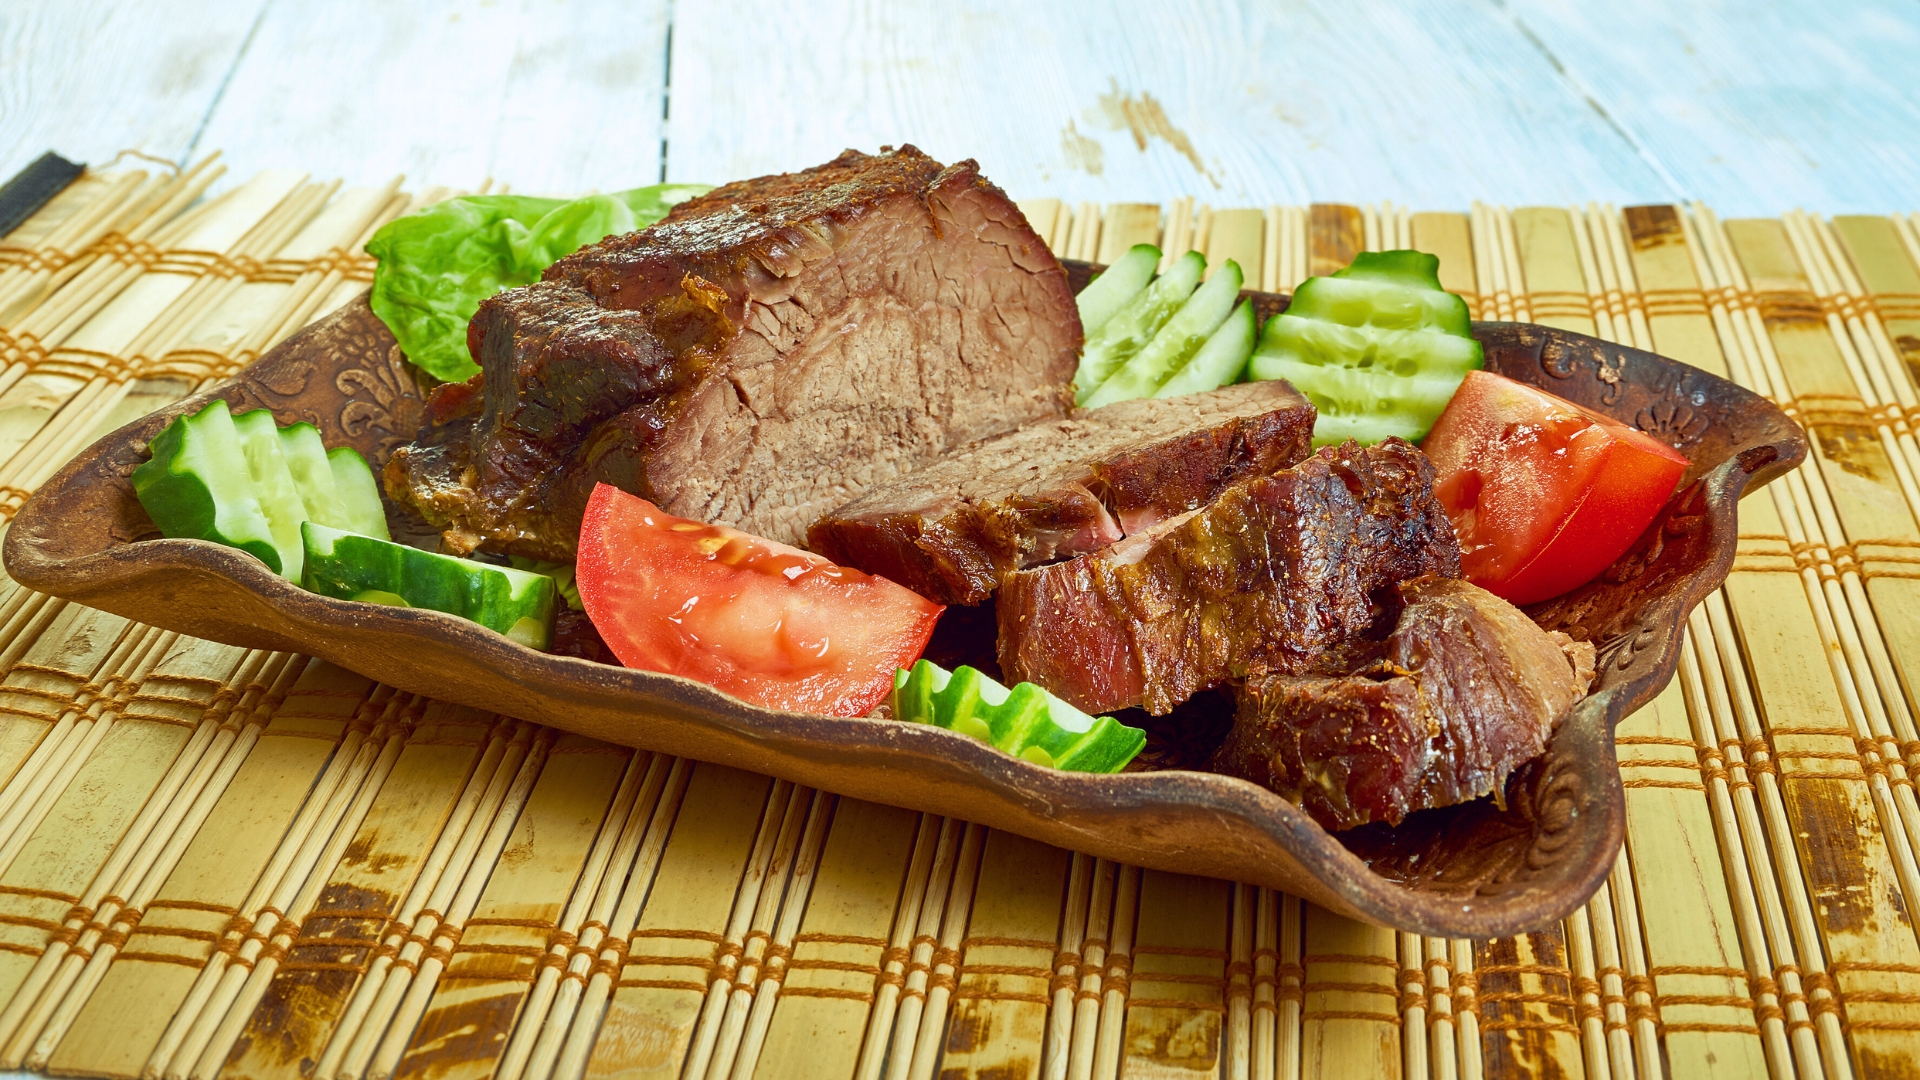 Pipikaula - Hawaiian Beef Jerky